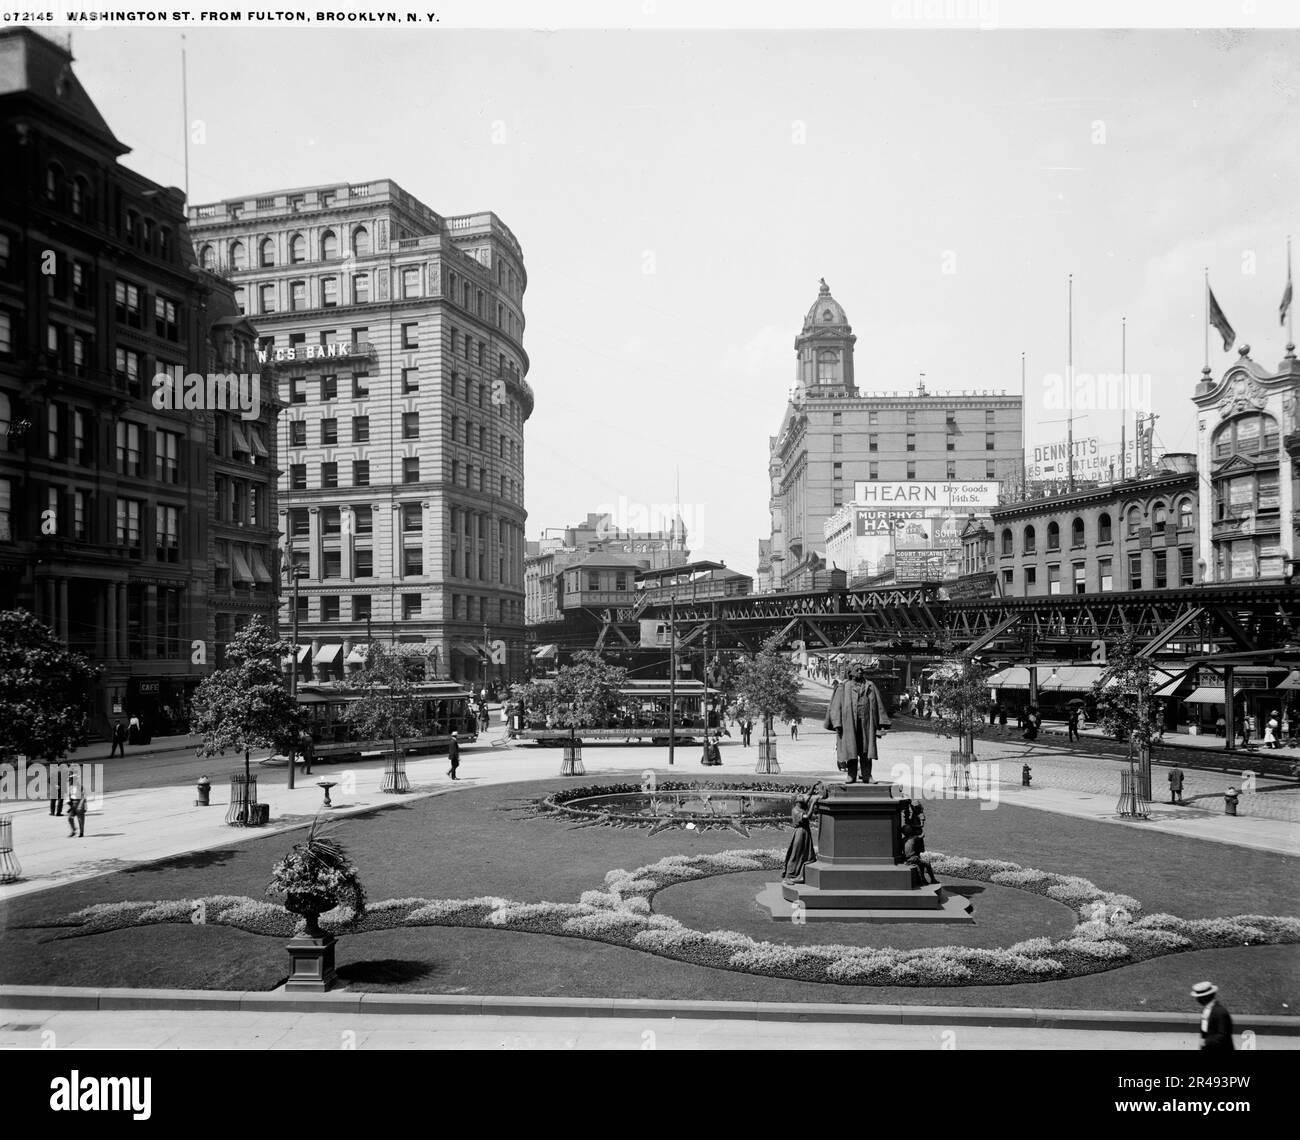 Washington St. von Fulton, Brooklyn, New York, zwischen 1900 und 1920. Stockfoto